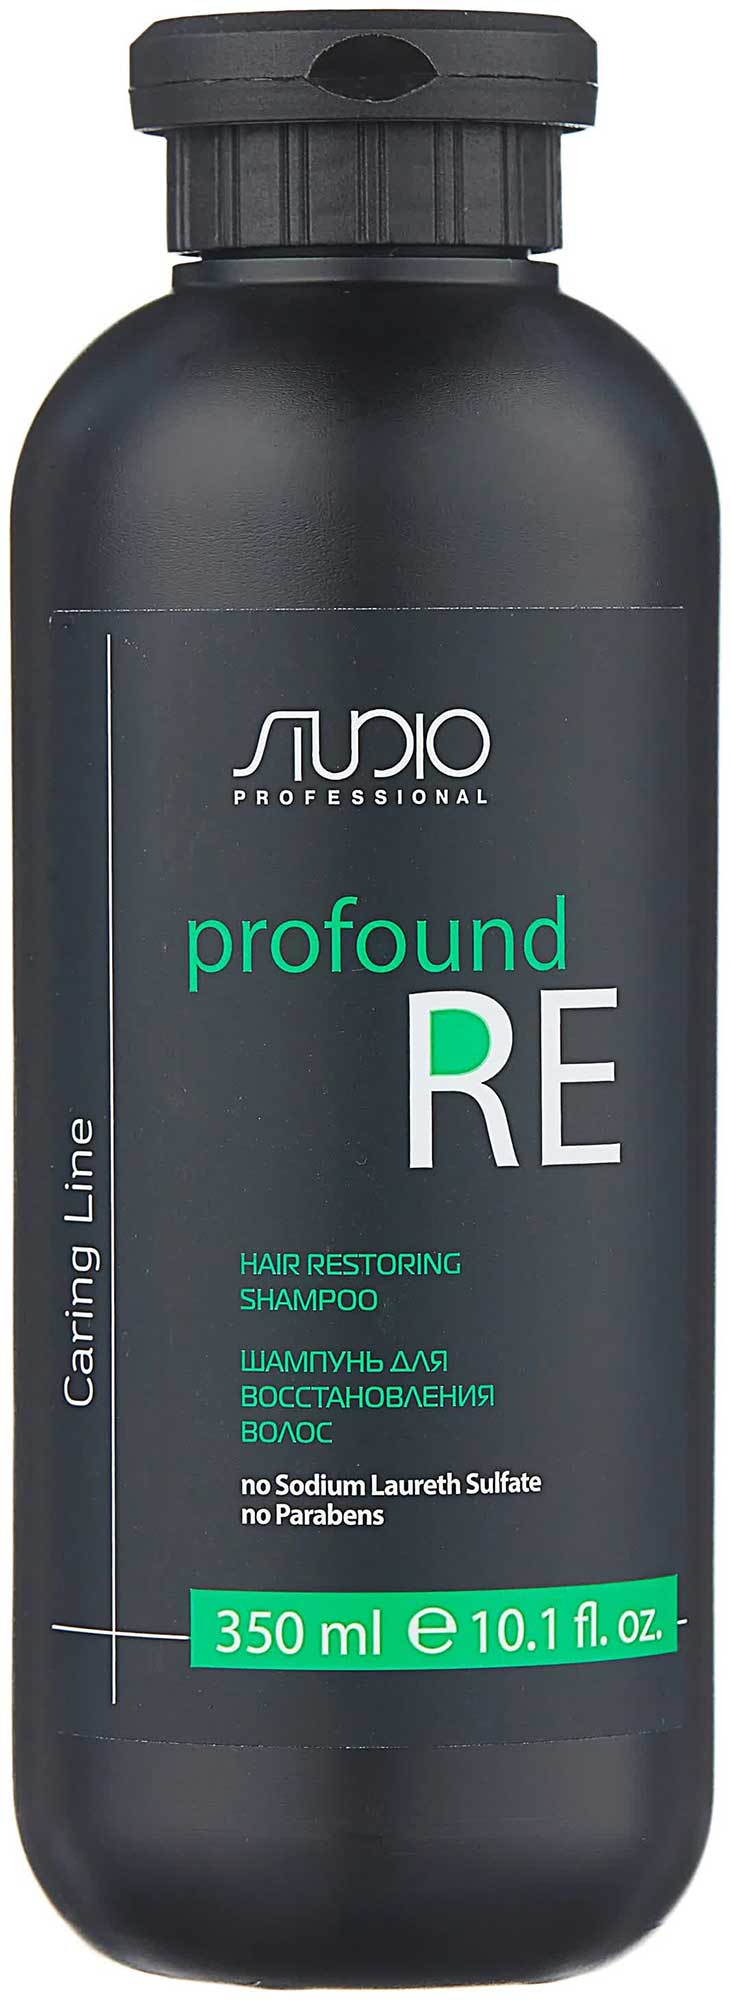 Шампунь Kapous Studio для восстановления волос Profound Re серии Caring Line  350 мл